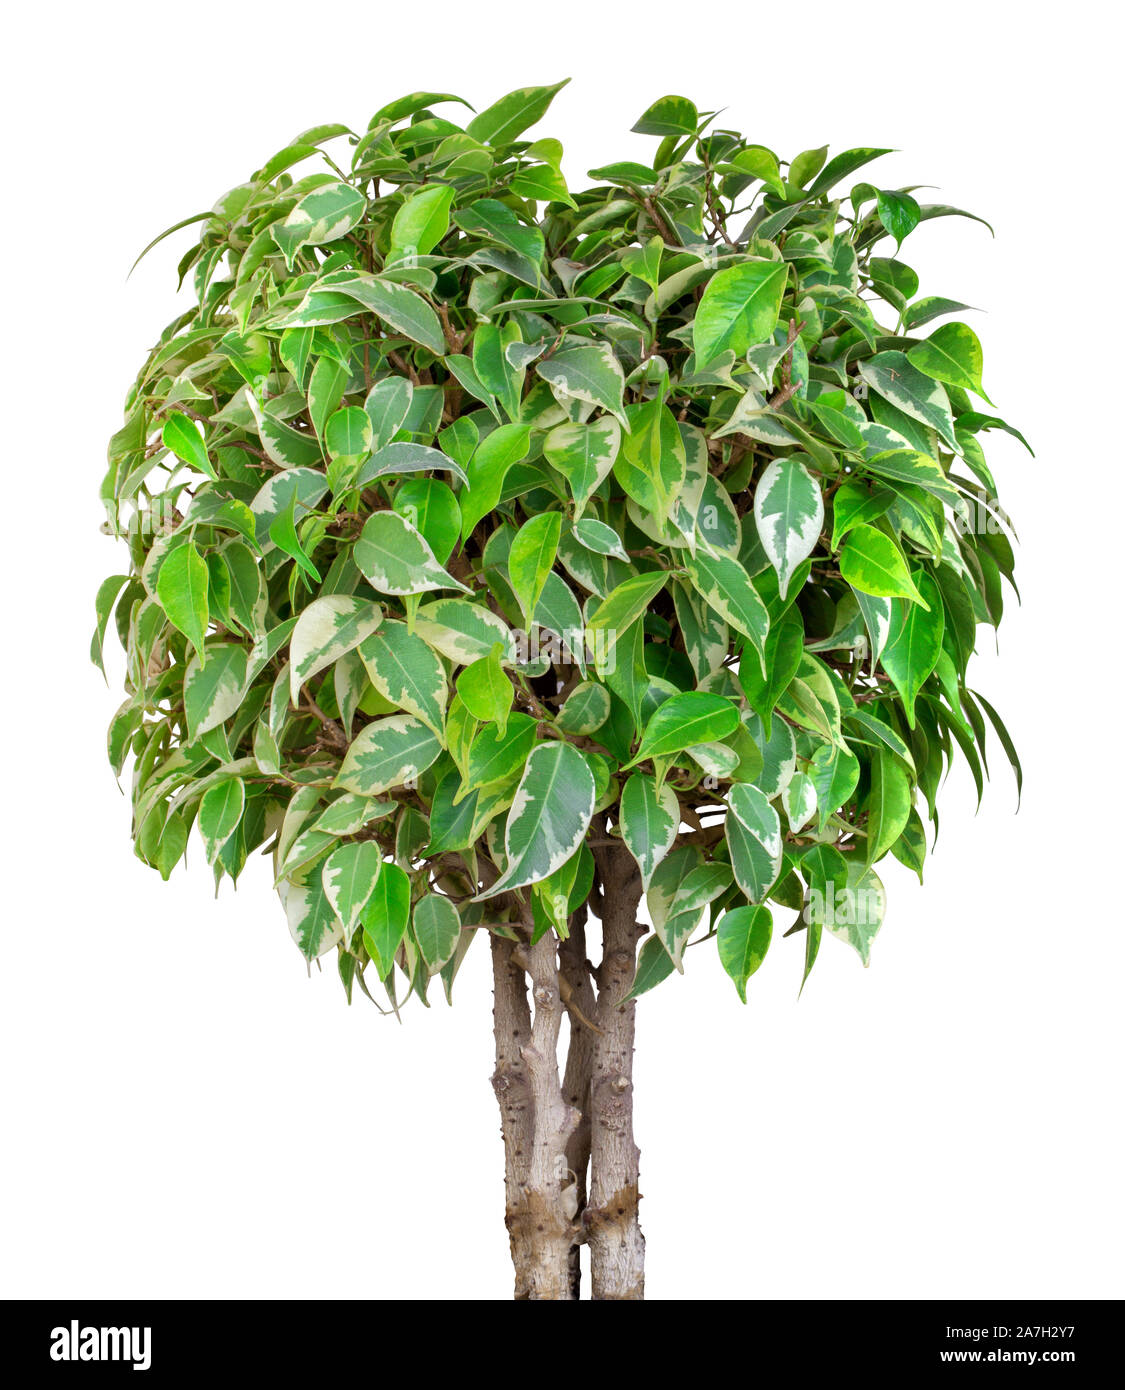 Bonsai runde Form baum Ficus Benjamin isoliert auf weißem Hintergrund  Stockfotografie - Alamy